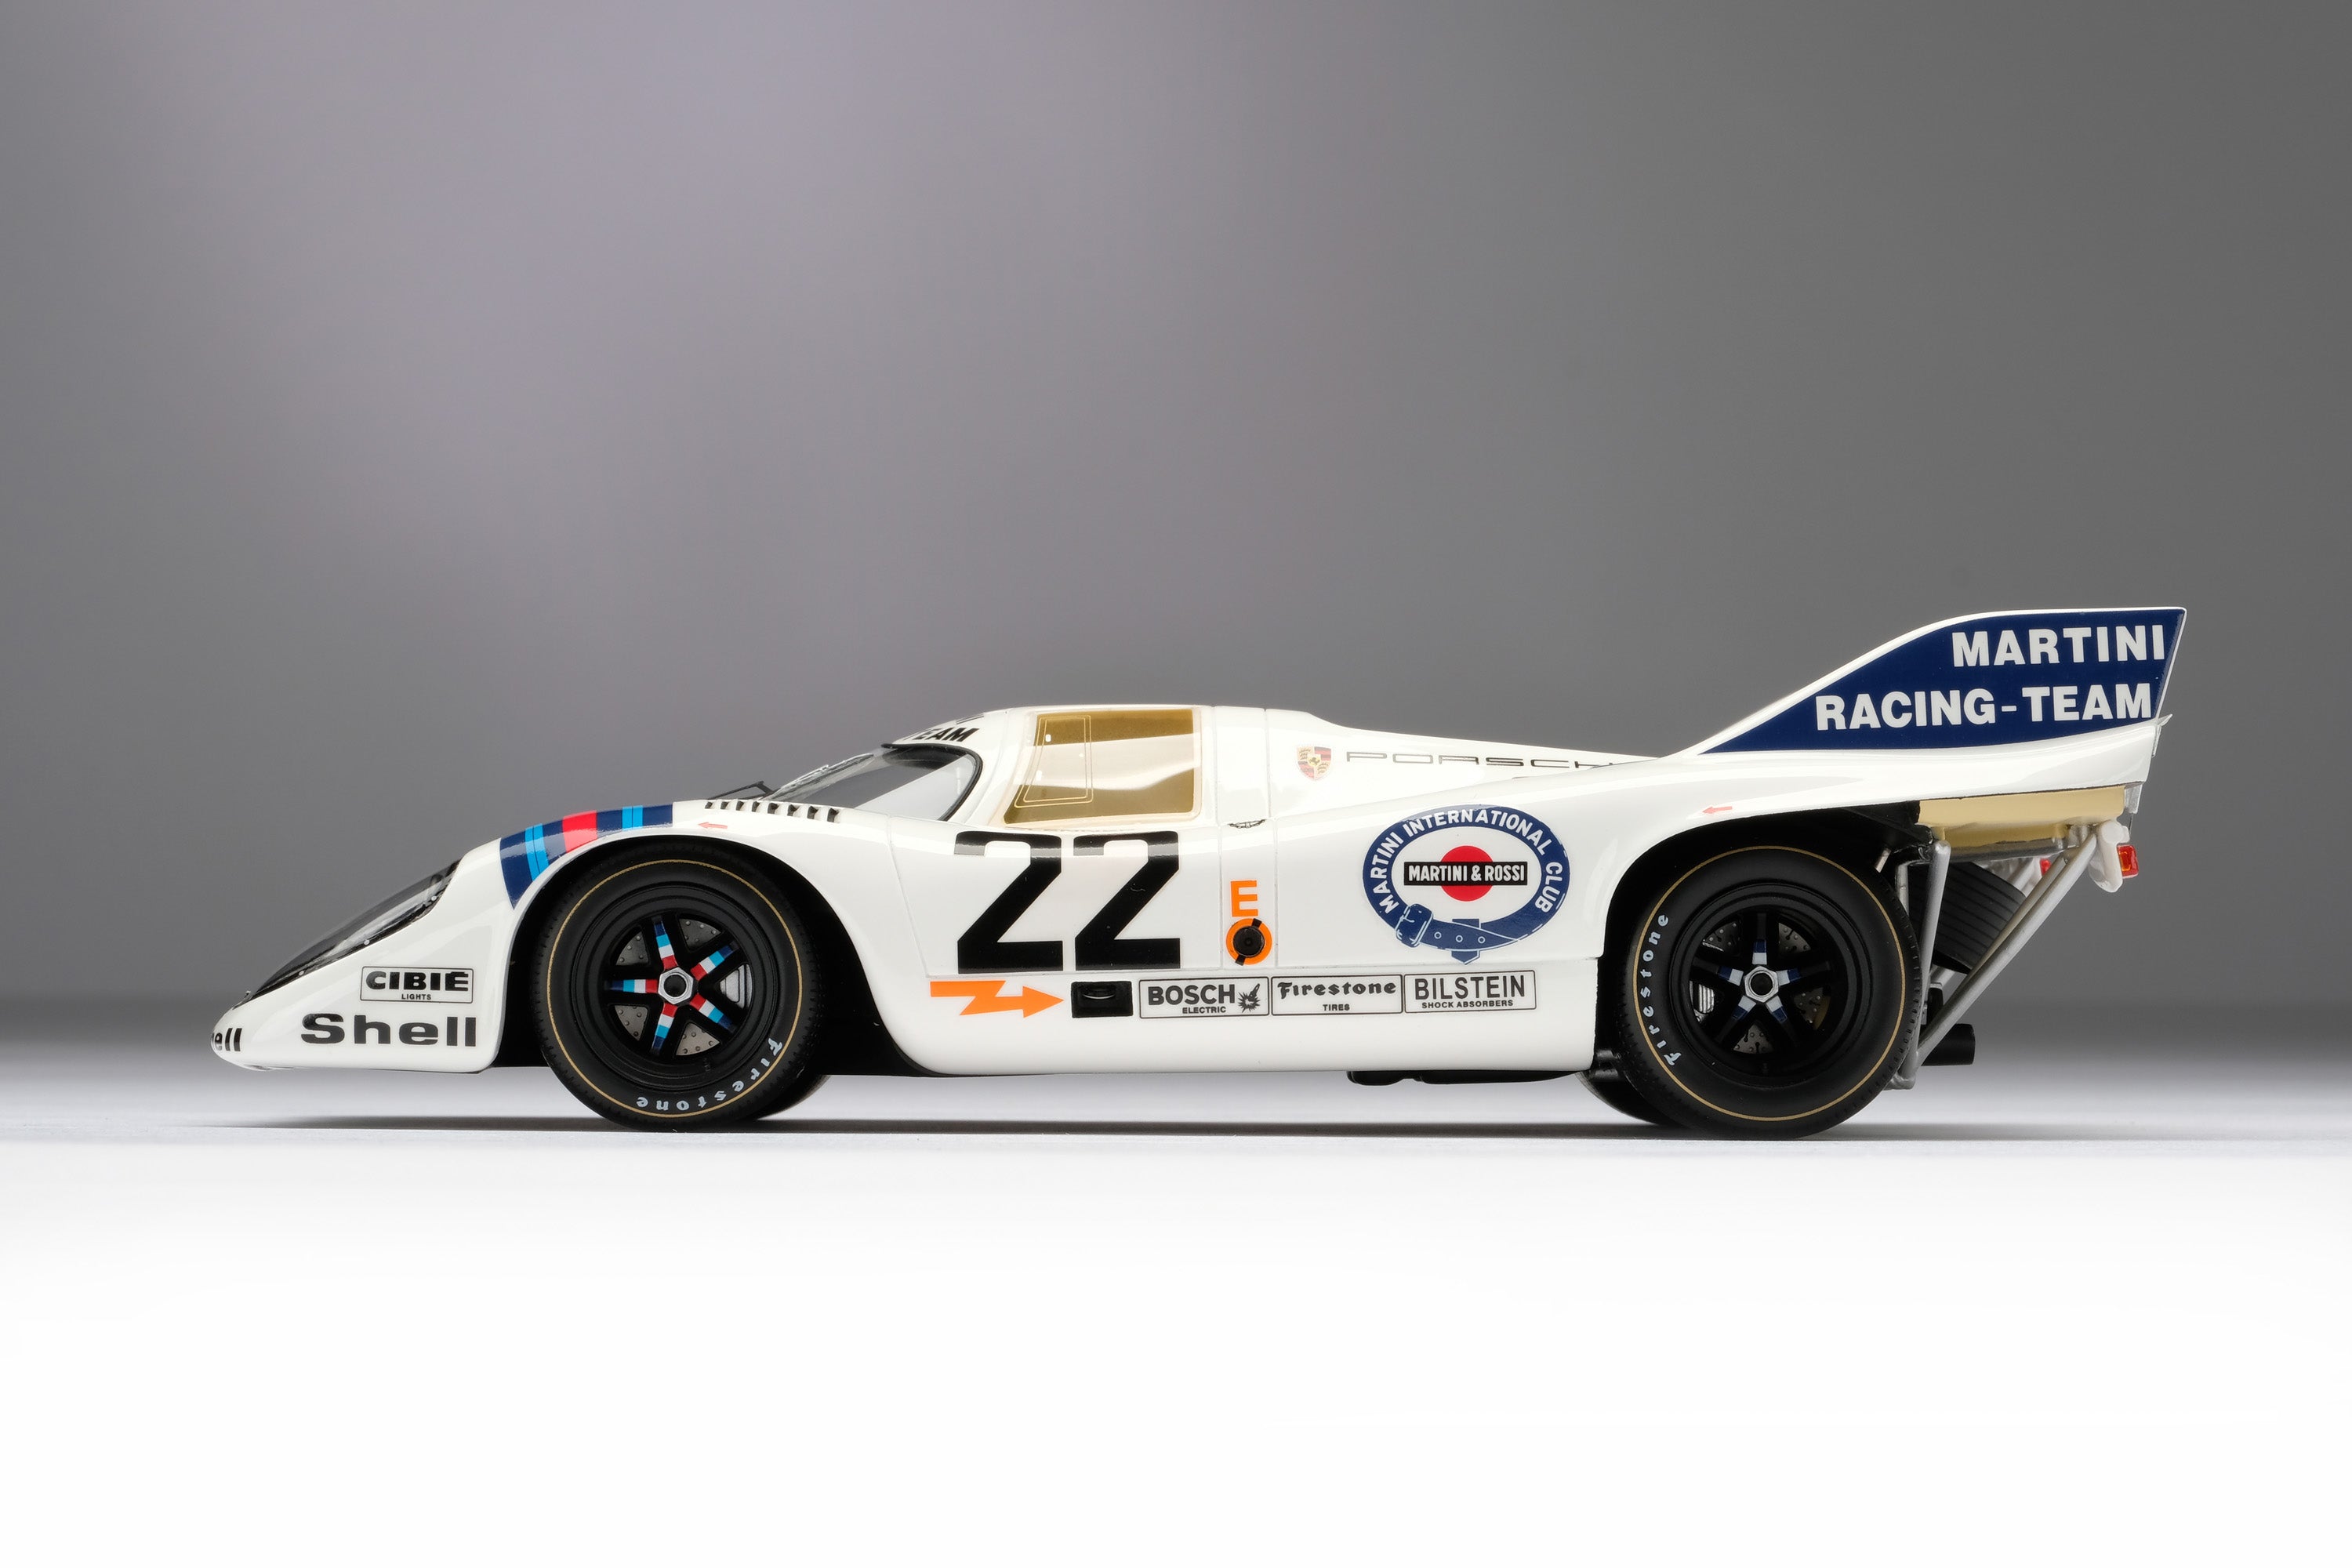 ポルシェ 917K - 1971 年のル・マンの勝者 - マティーニ・カラーリング